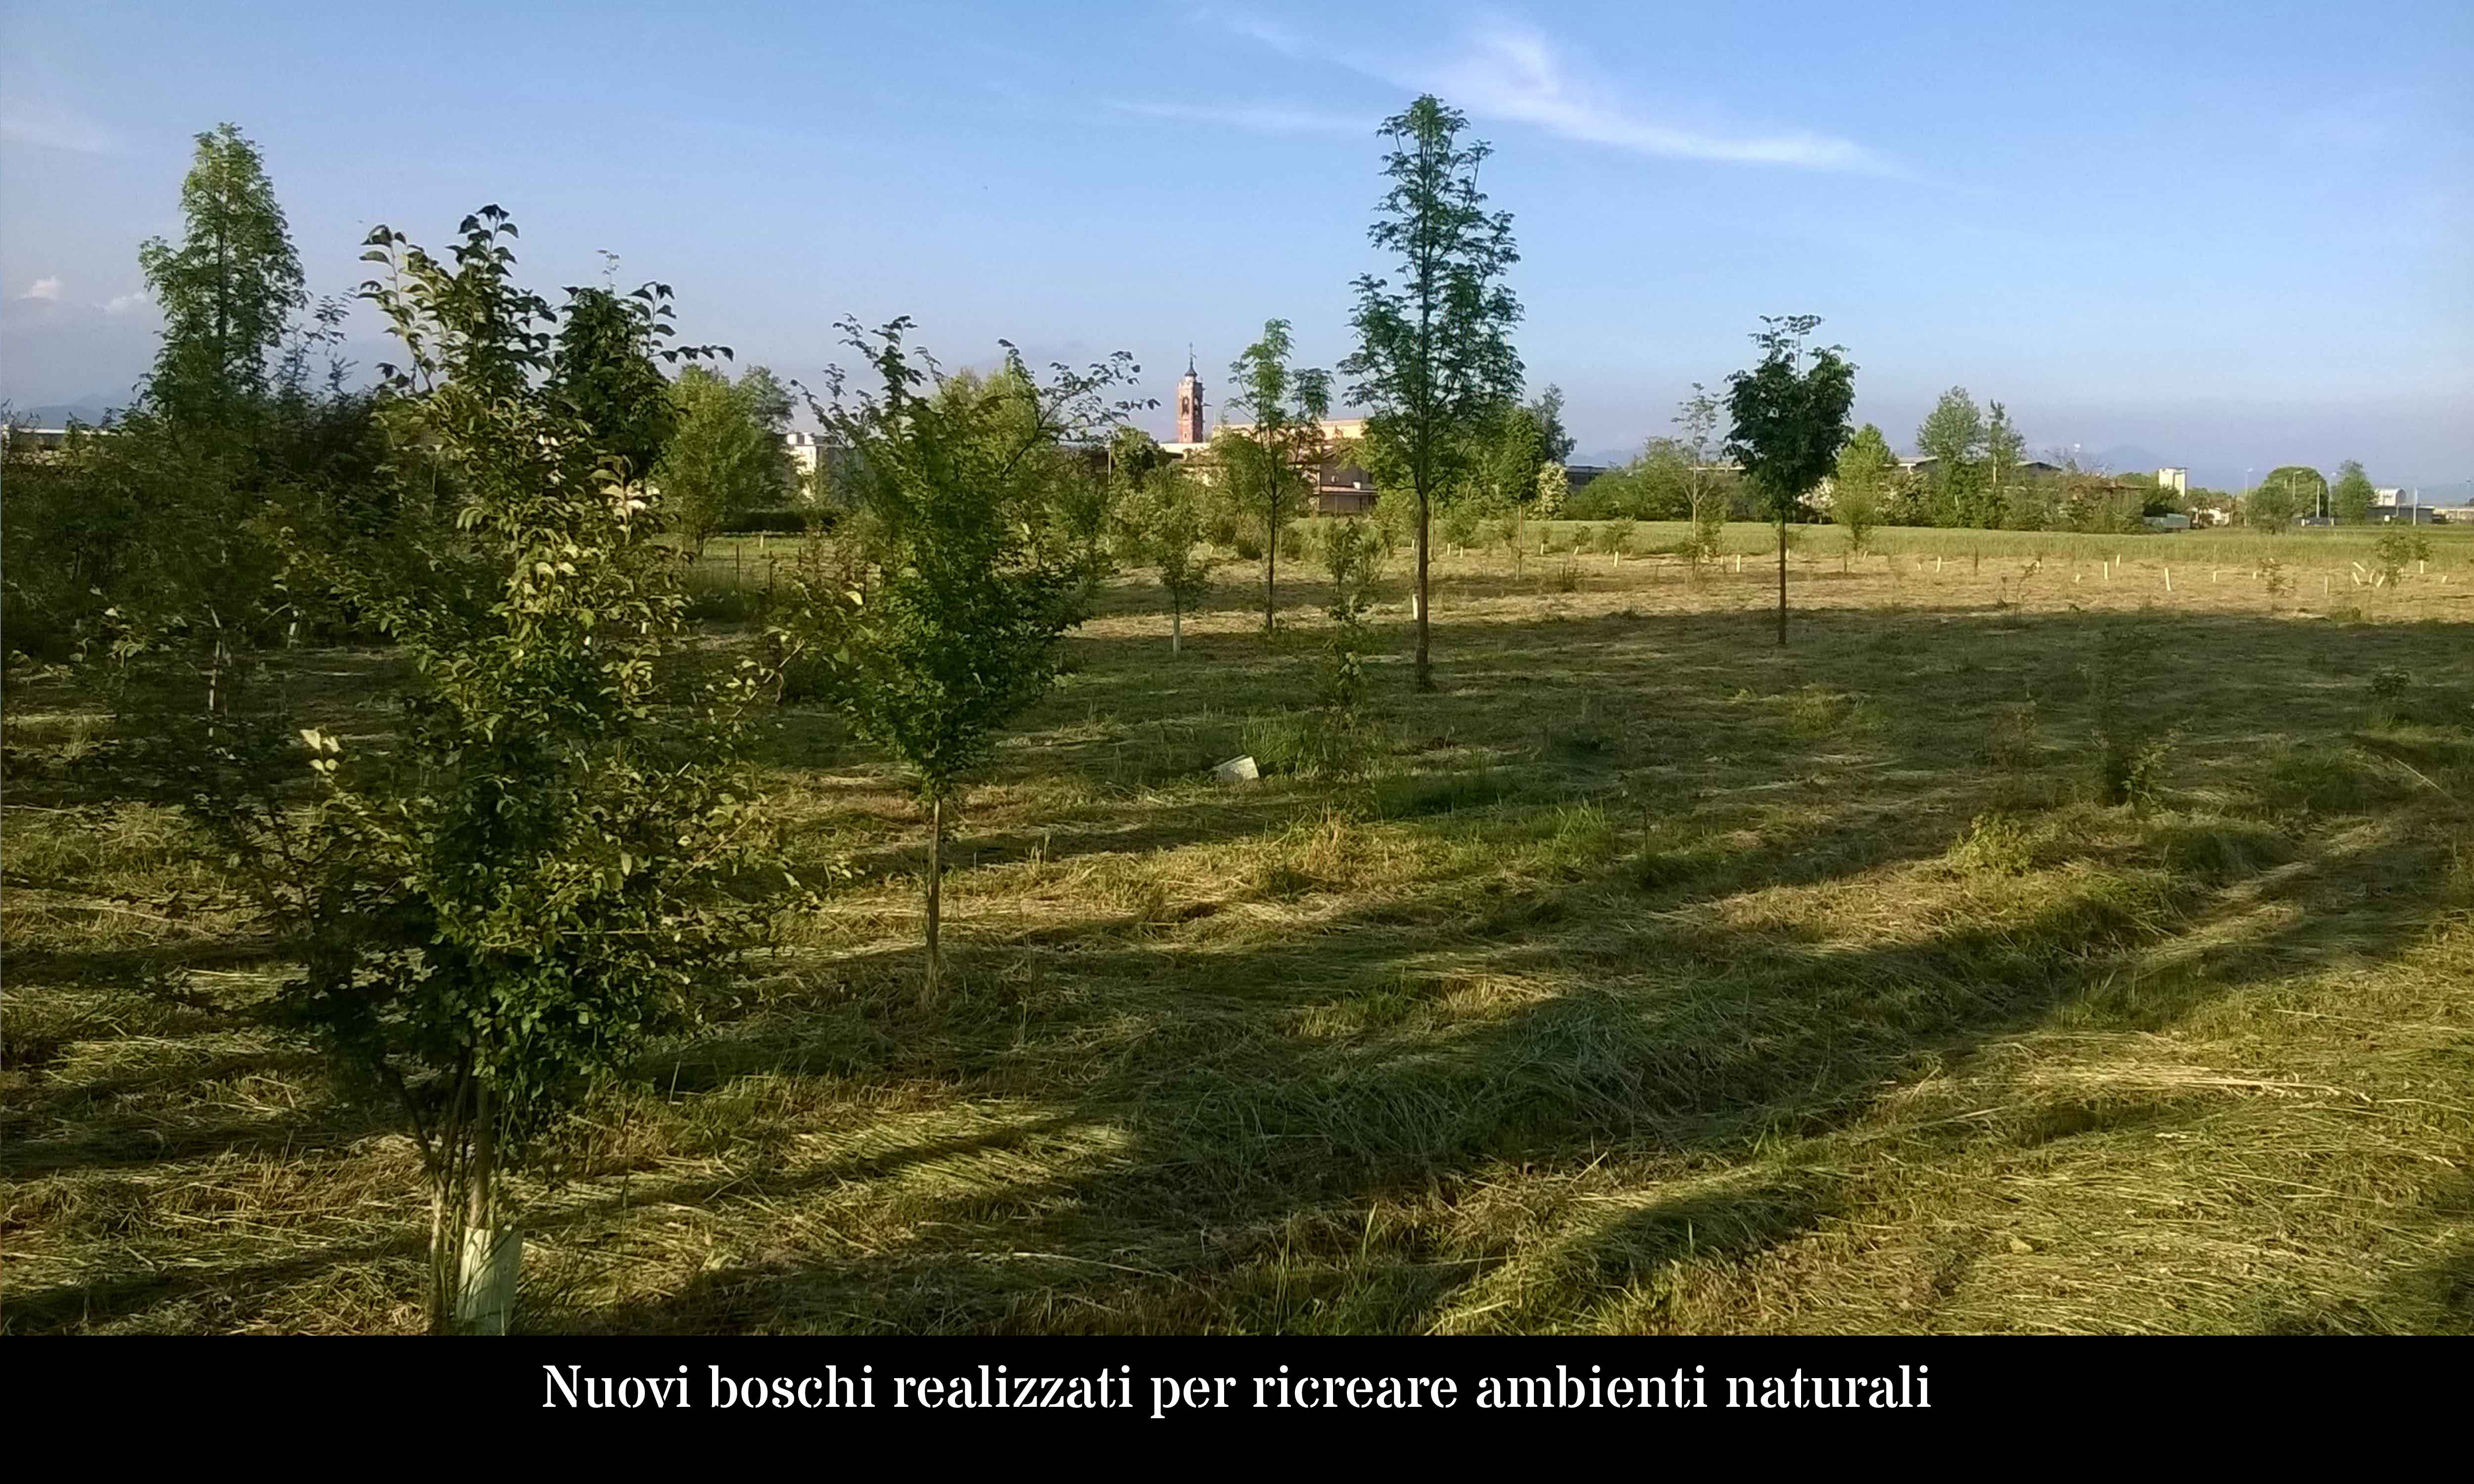 Nuovi boschi realizzati per ricreare ambienti naturali ora poco presenti